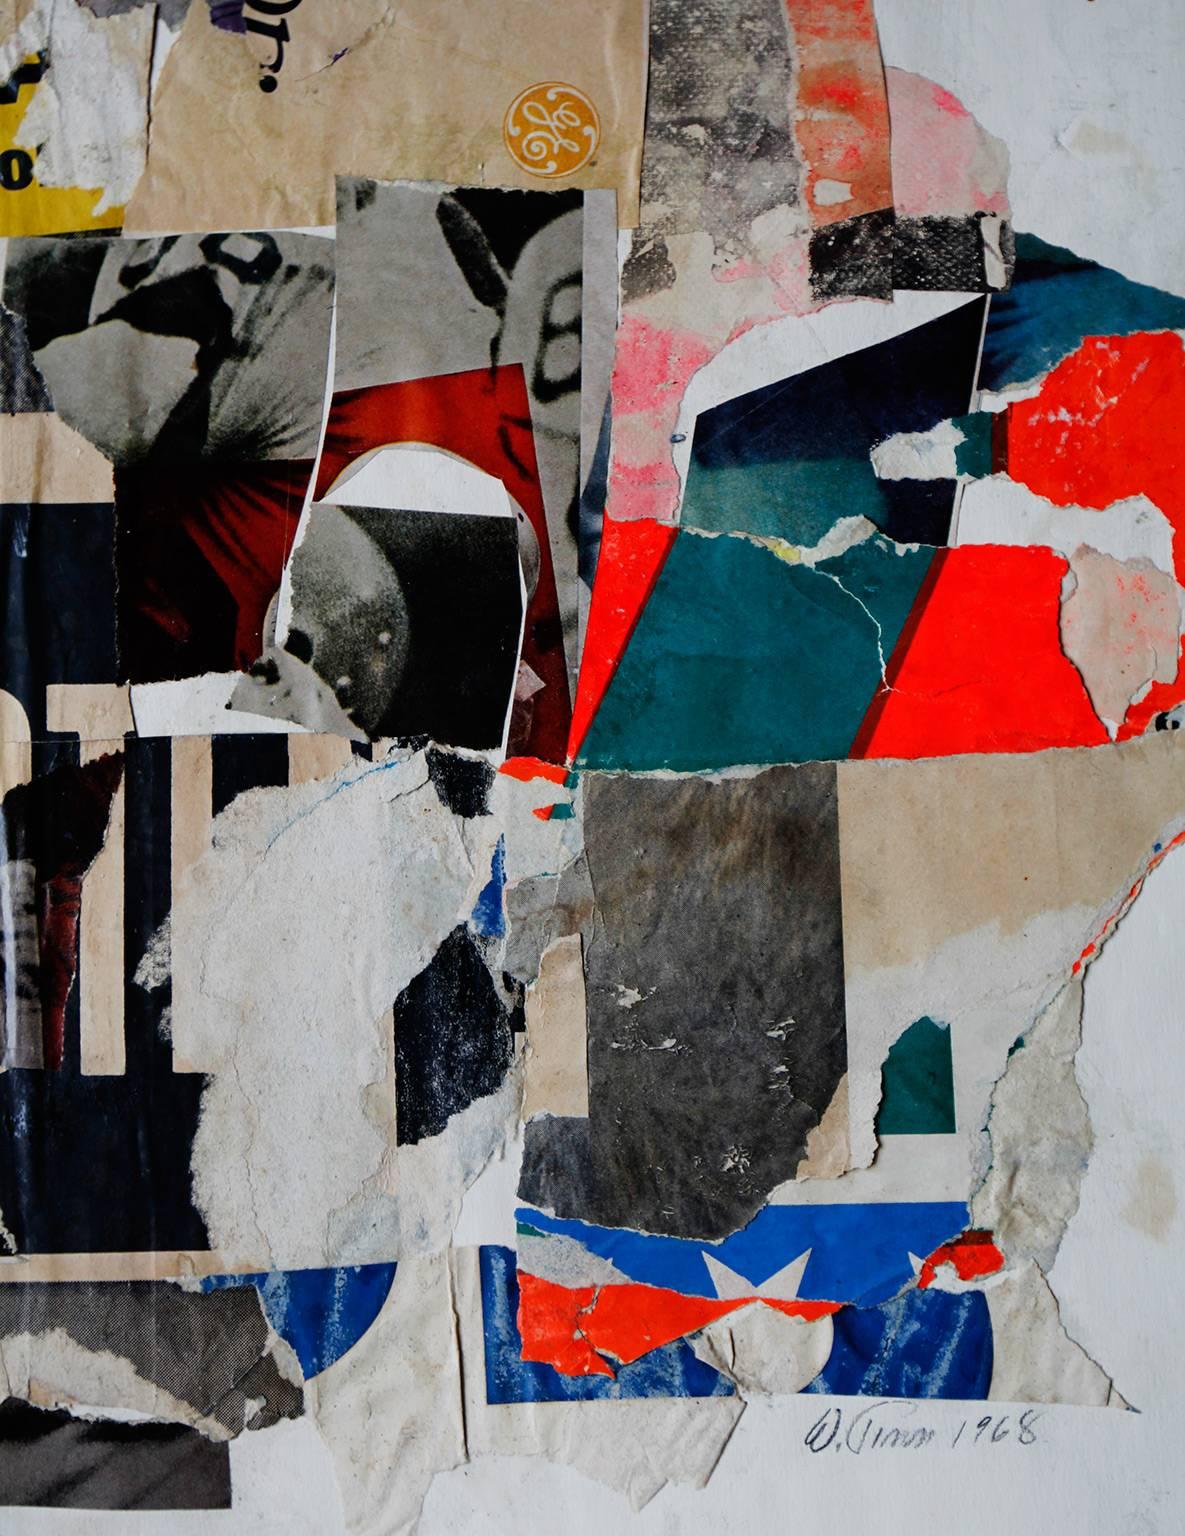 Collage de papier et d'adhésif par Wayne Timm

Le collage mesure 13 3/4 x 15 1/2 in. 

Dans les années 1960, Wayne Timm a côtoyé des artistes comme Warhol, Lichtenstein, Rauchenburg et bien d'autres, à l'époque où il avait un studio d'art à New York